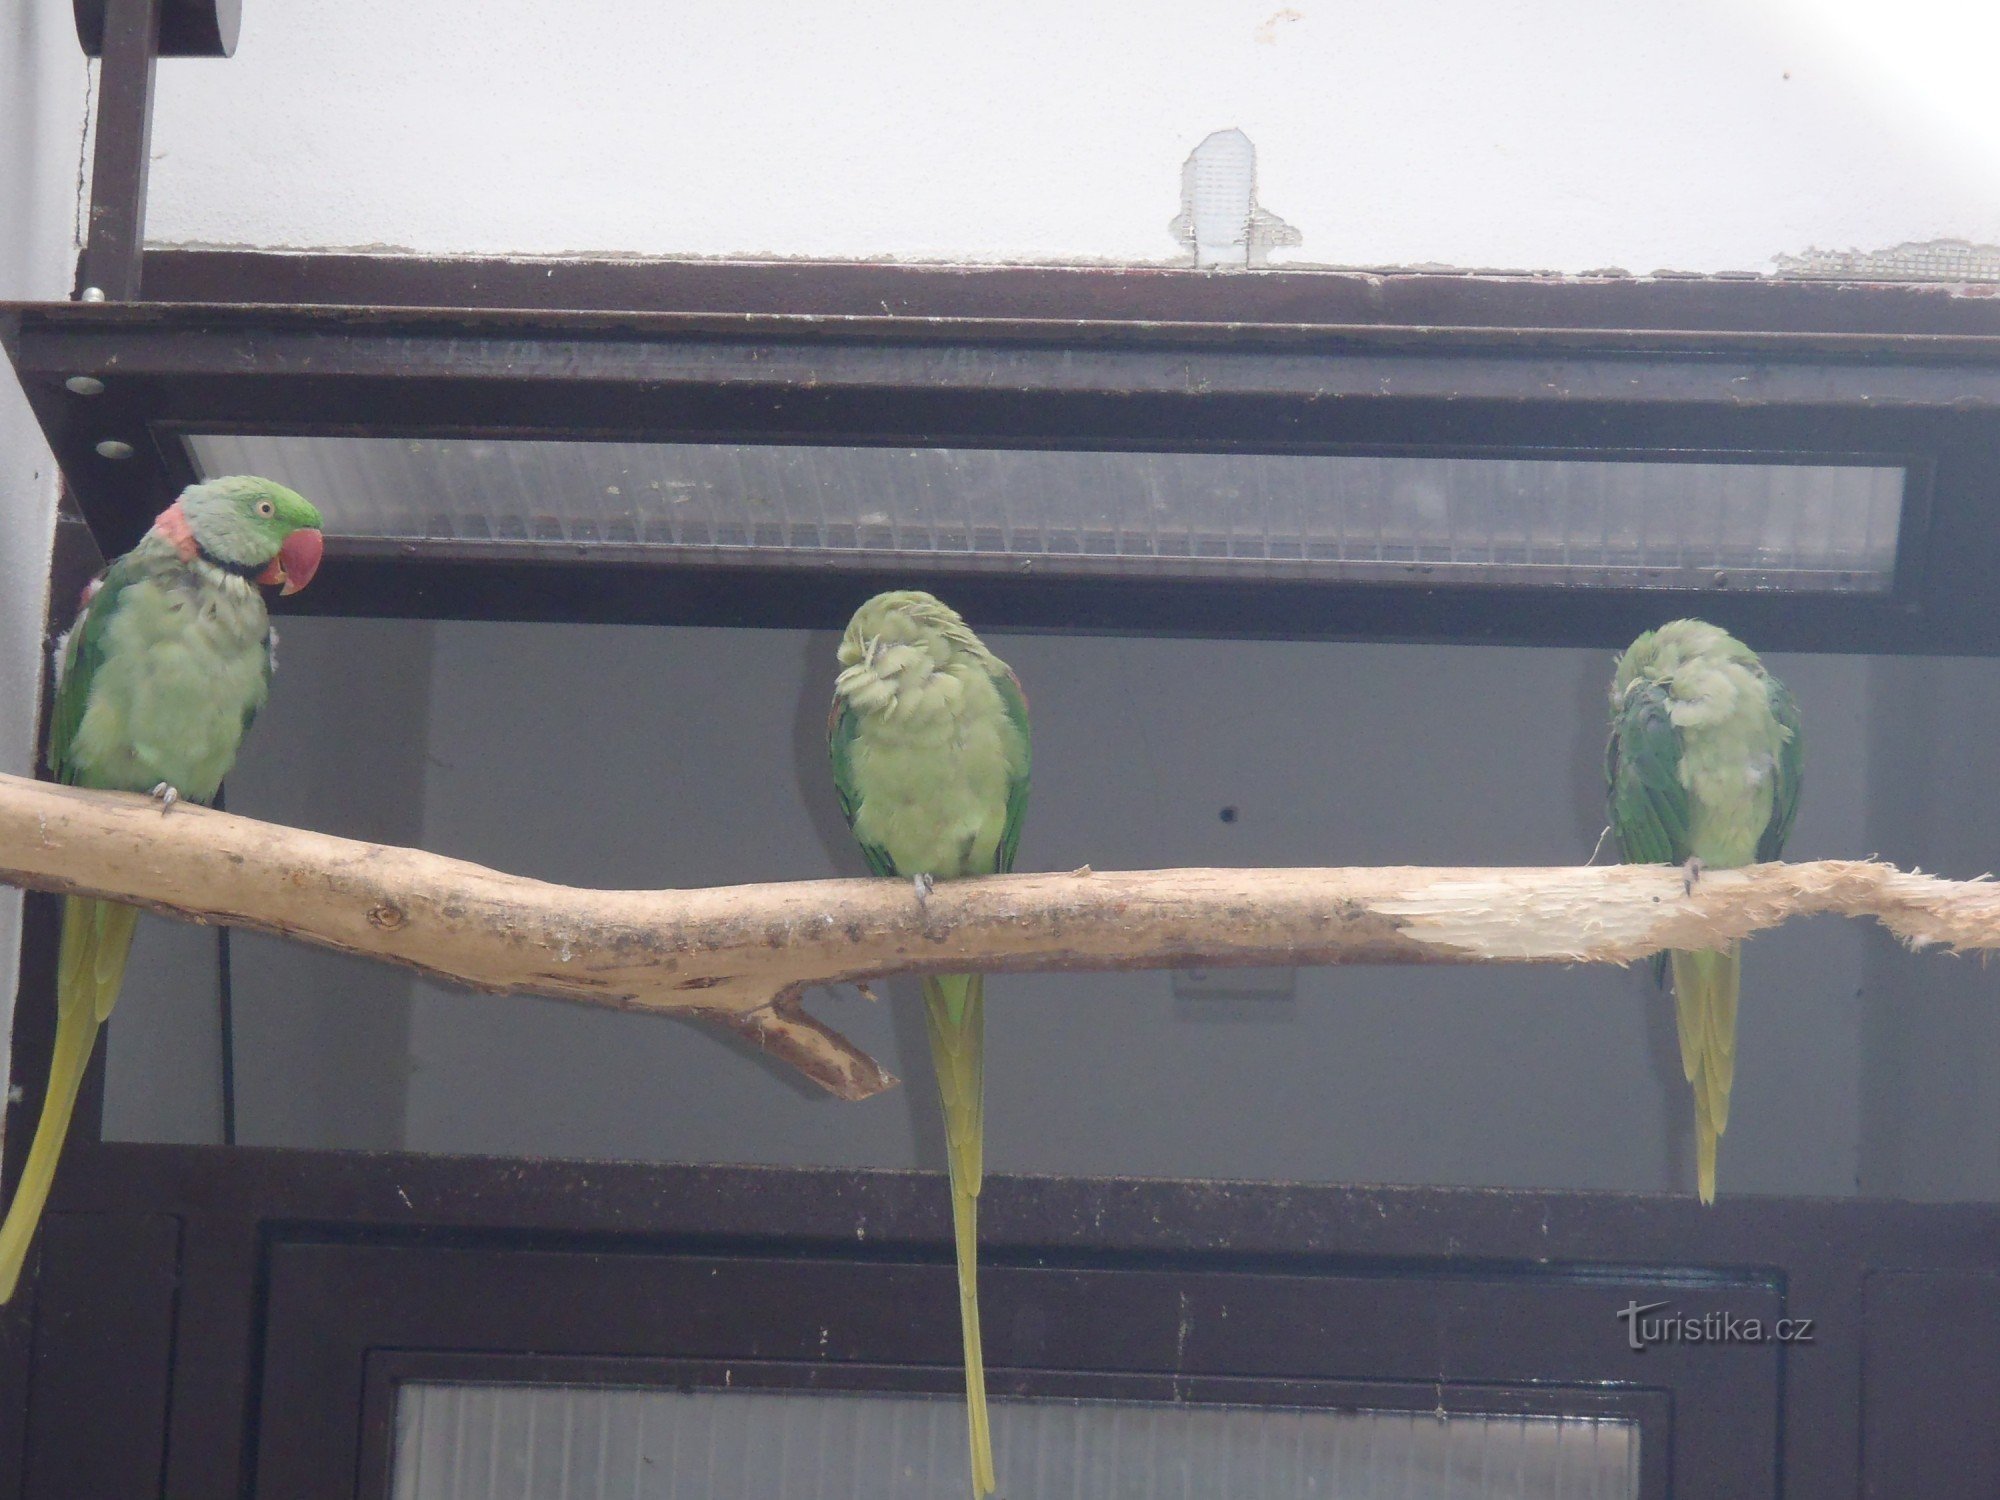 Pelhřimov - papegøjer i parken